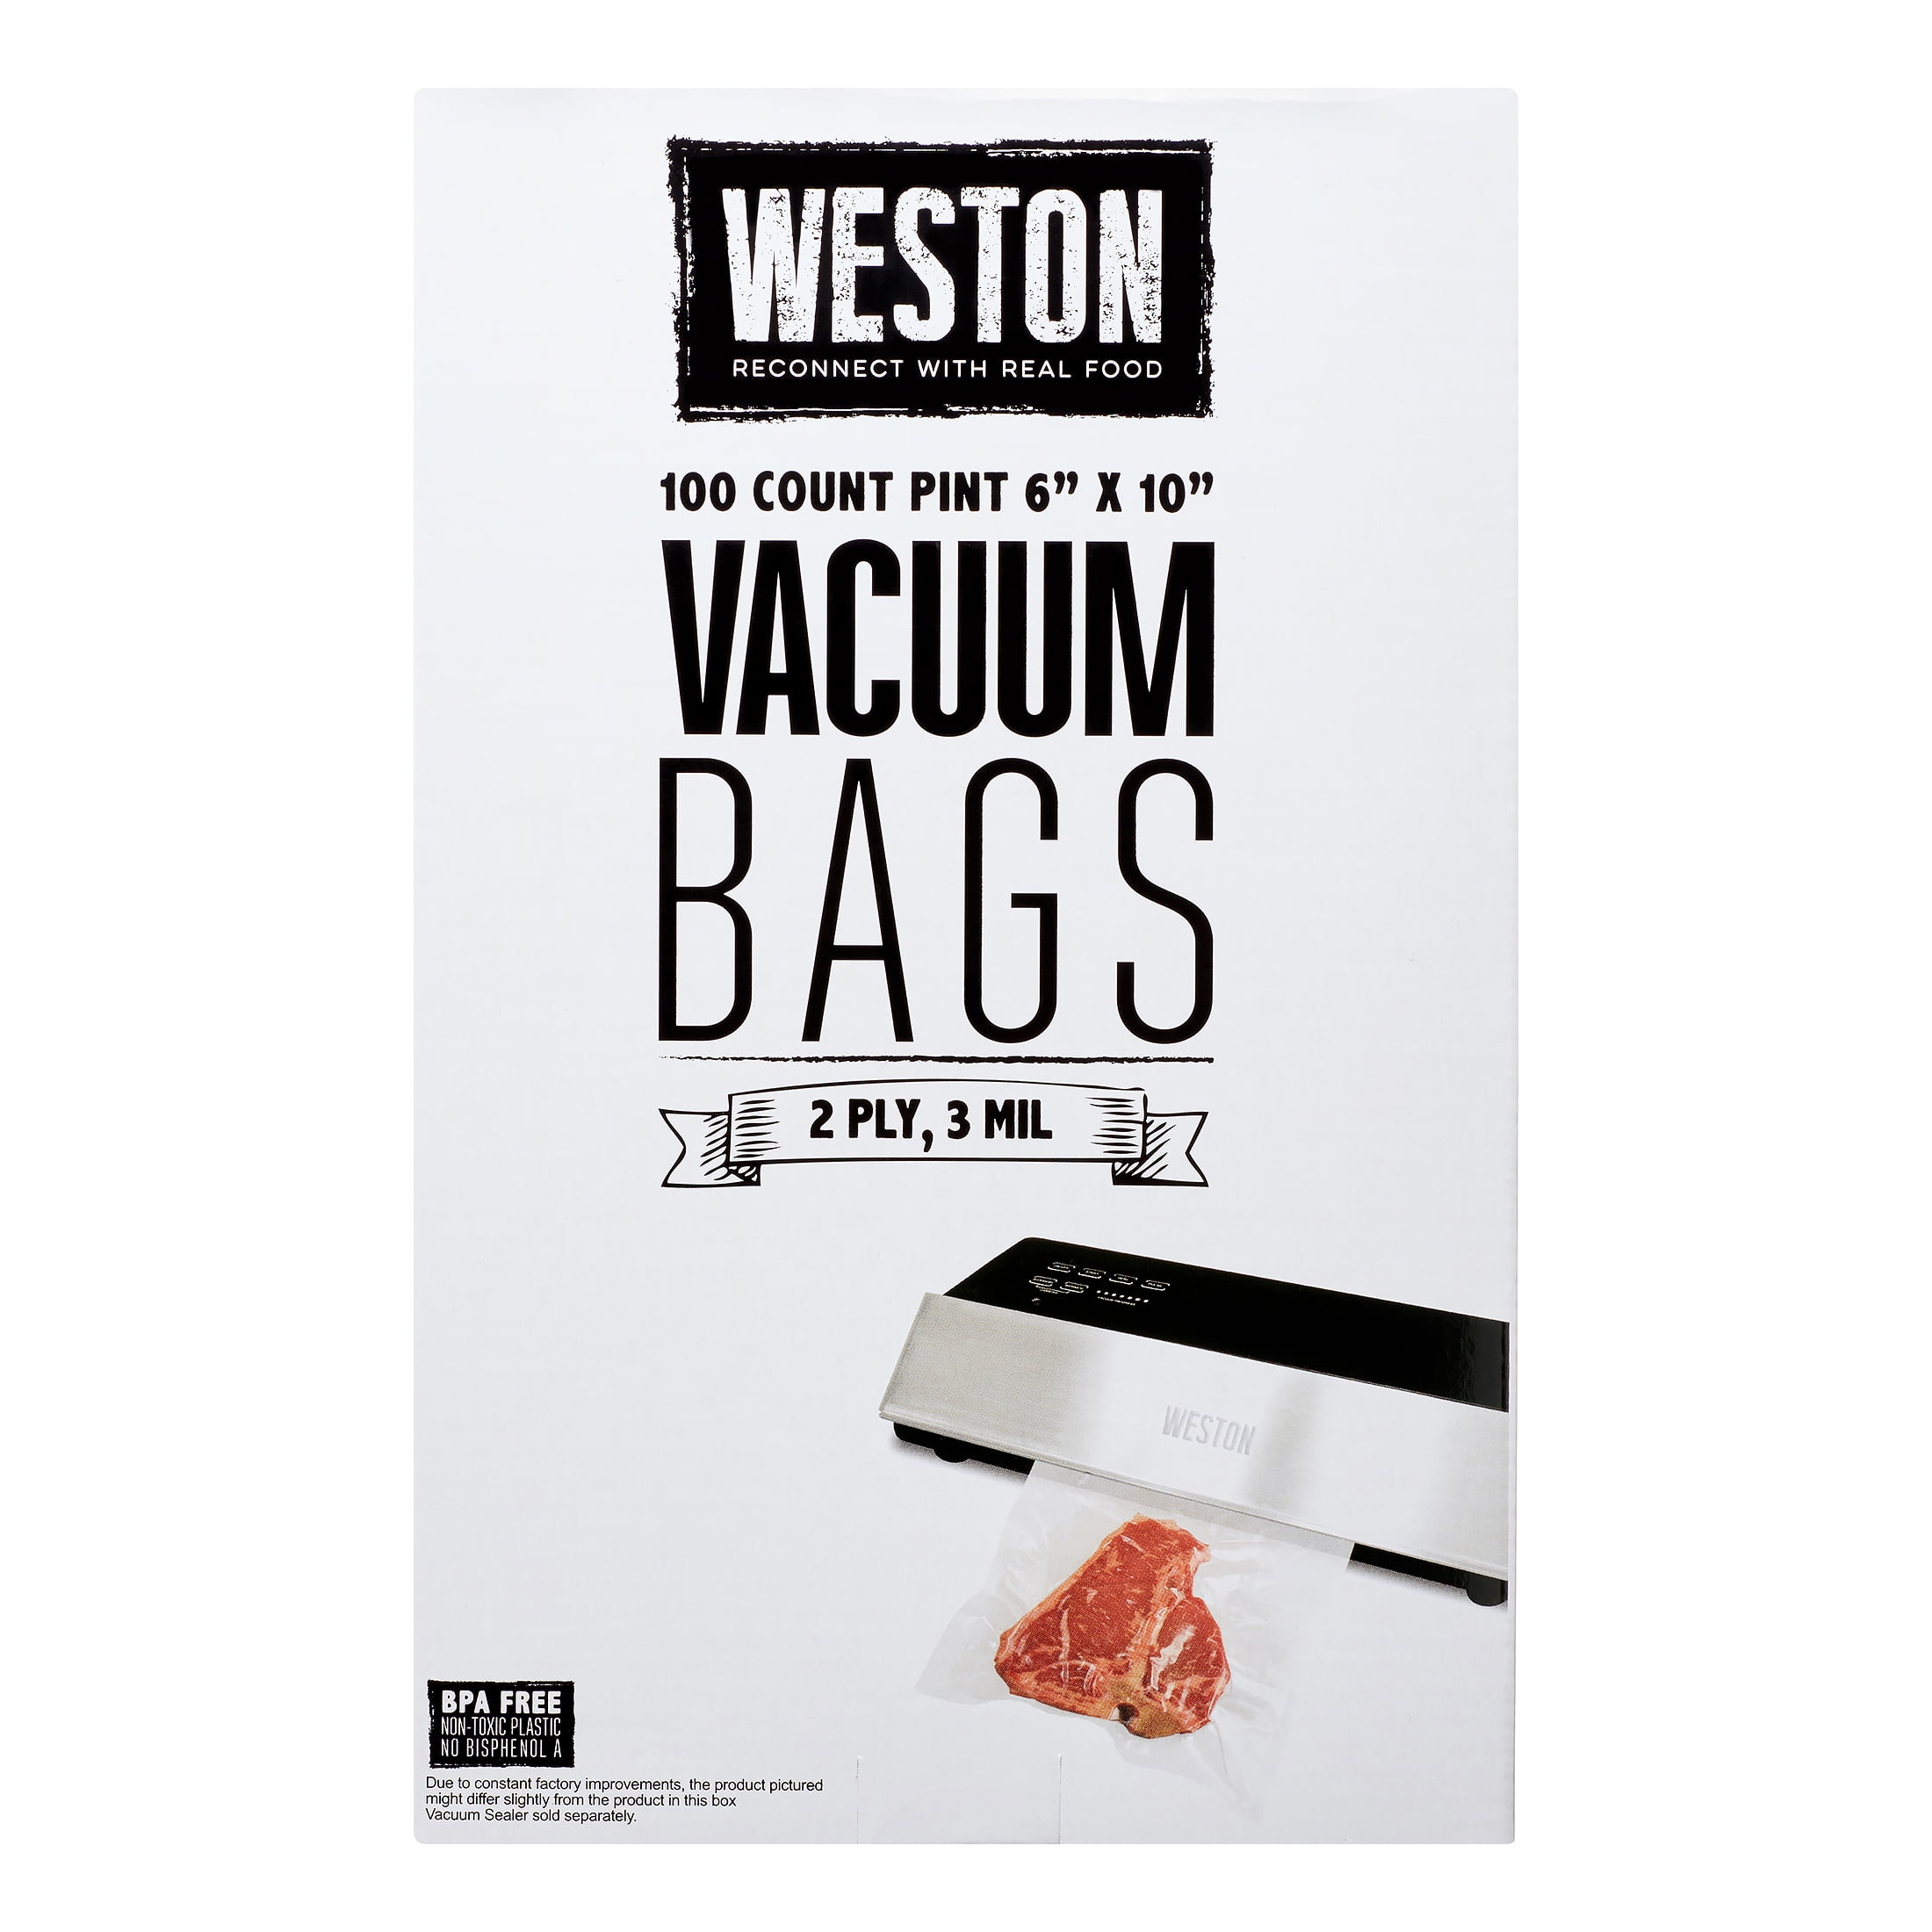 6 x 10 3 Mil Vacuum Seal Bags